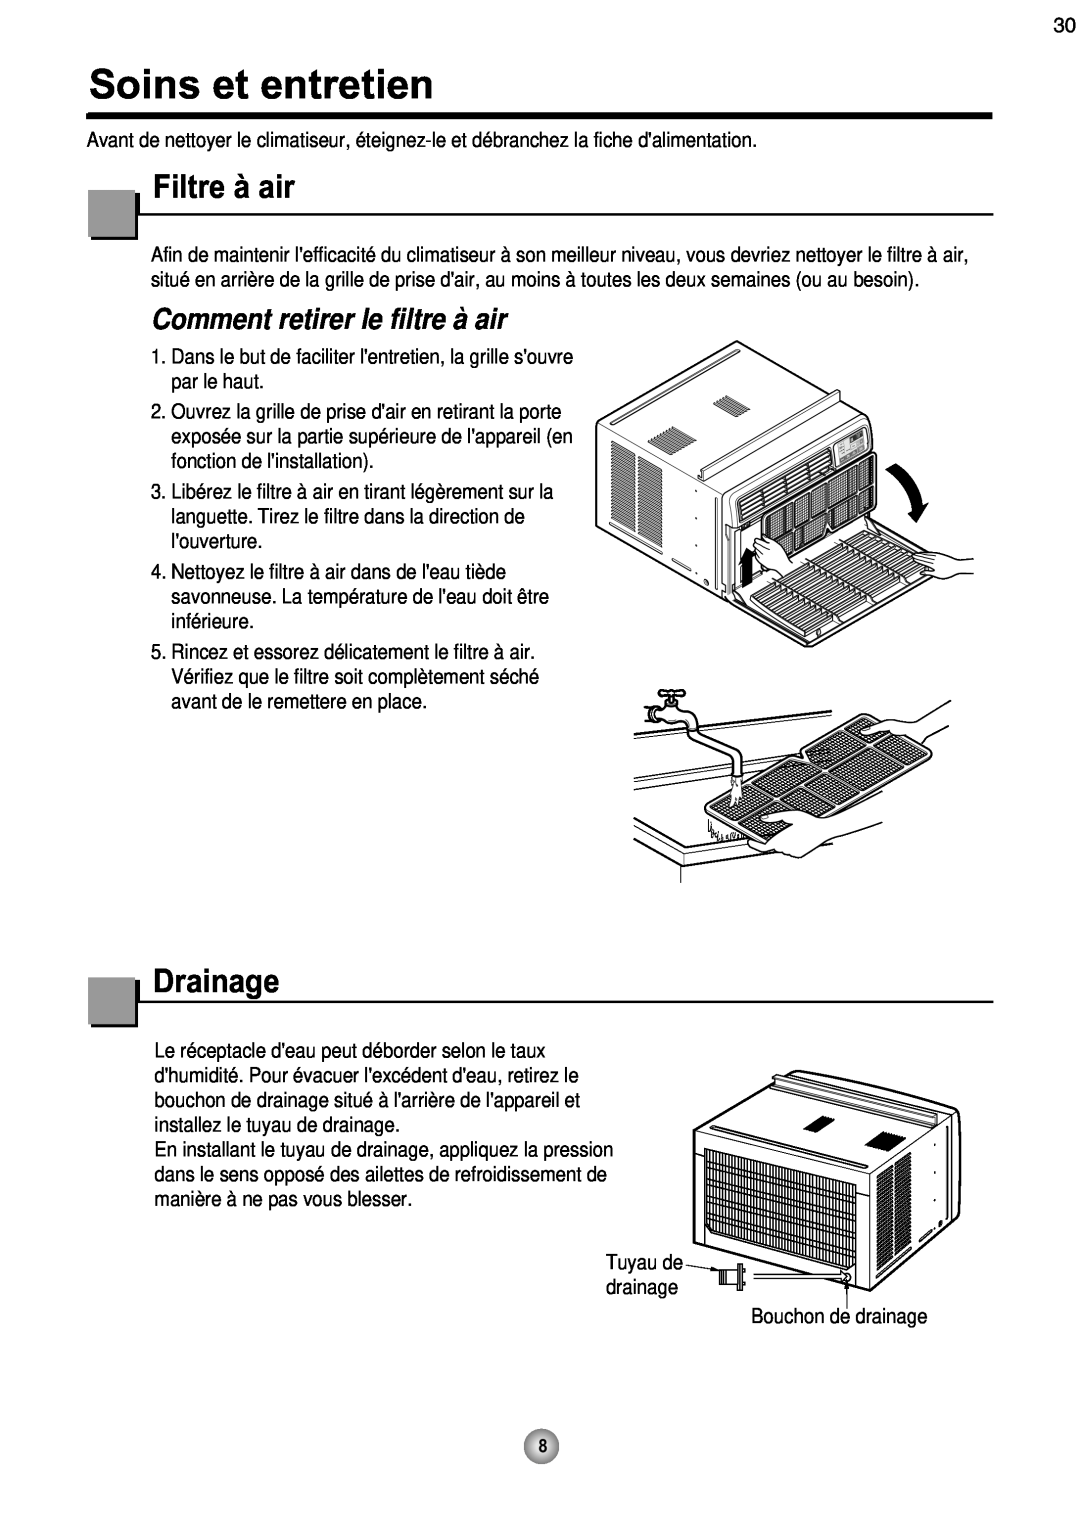 Friedrich CP08 operation manual Soins et entretien, Filtre à air, Drainage, Comment retirer le filtre à air 